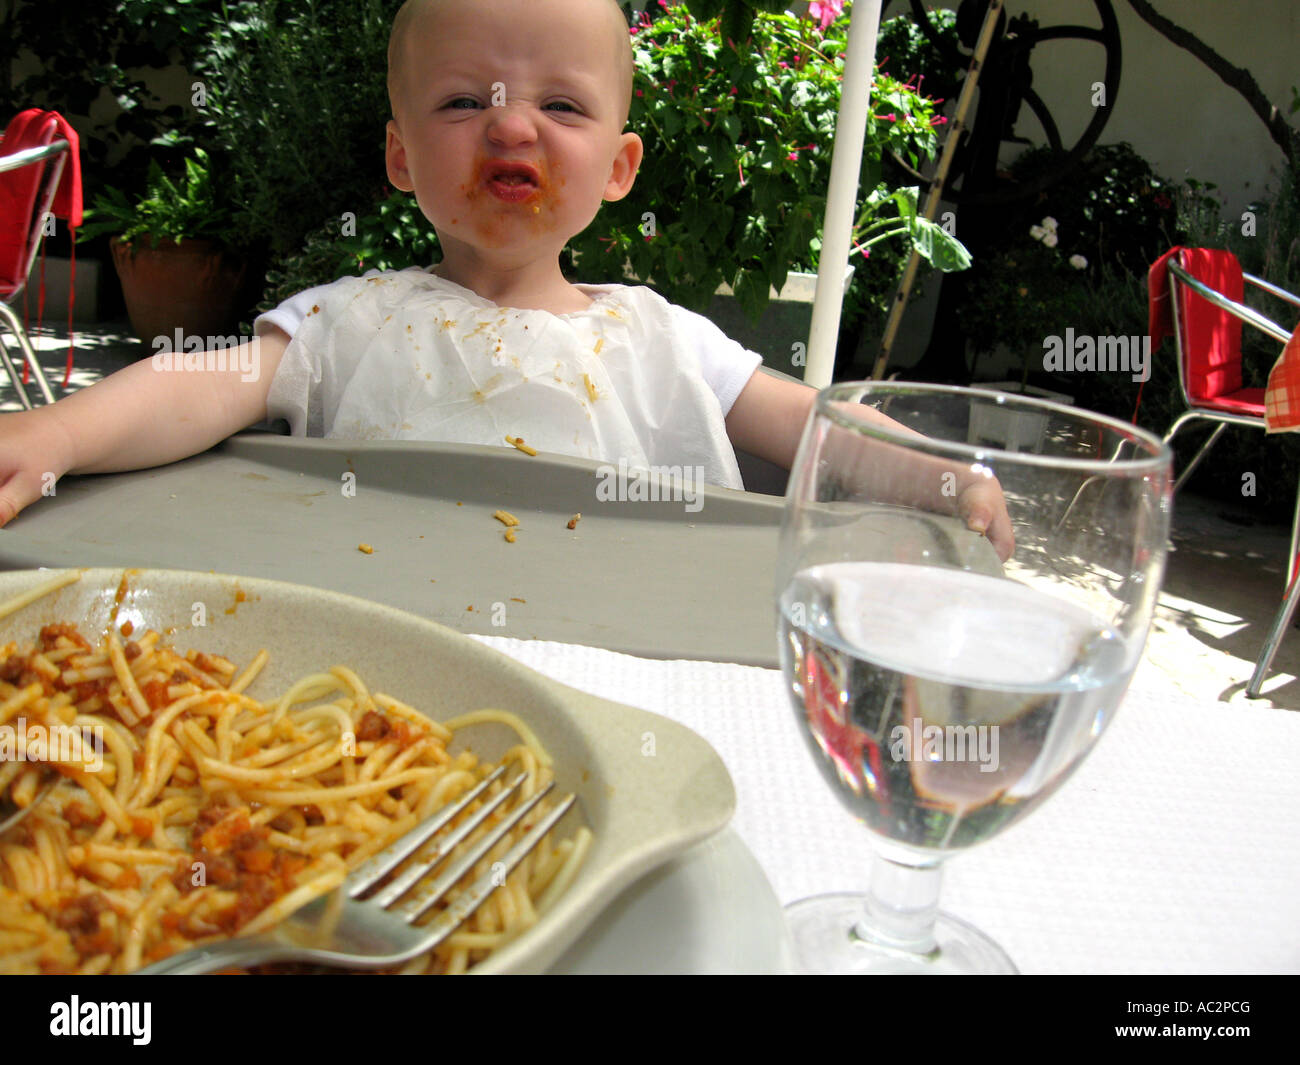 toddler having lunch in al fresco restaurant Stock Photo